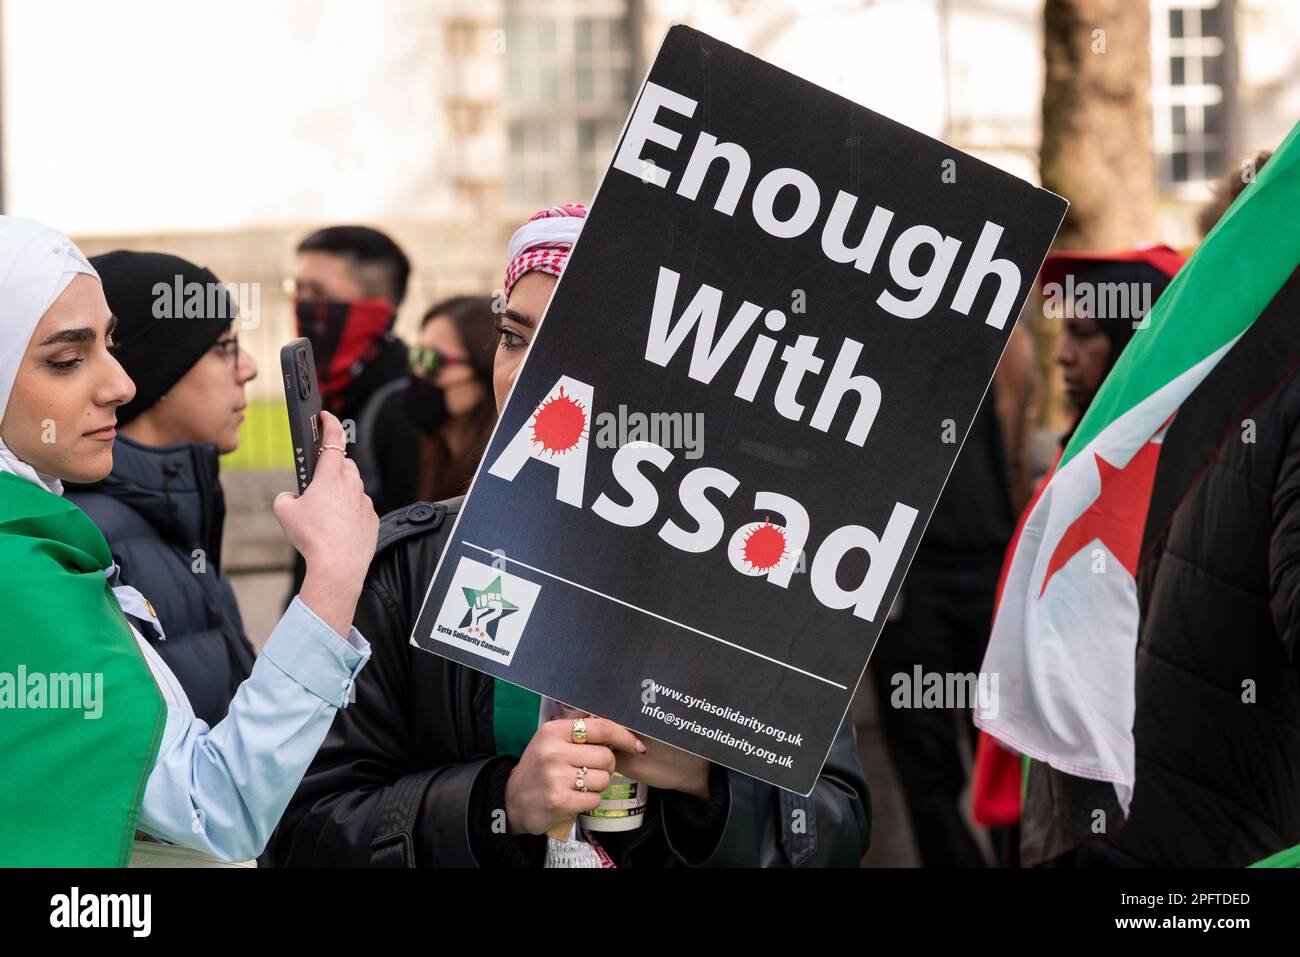 Protestation contre Assad à propos de la guerre en Syrie. Guerre civile syrienne. Assez avec la plaque d'Assad Banque D'Images